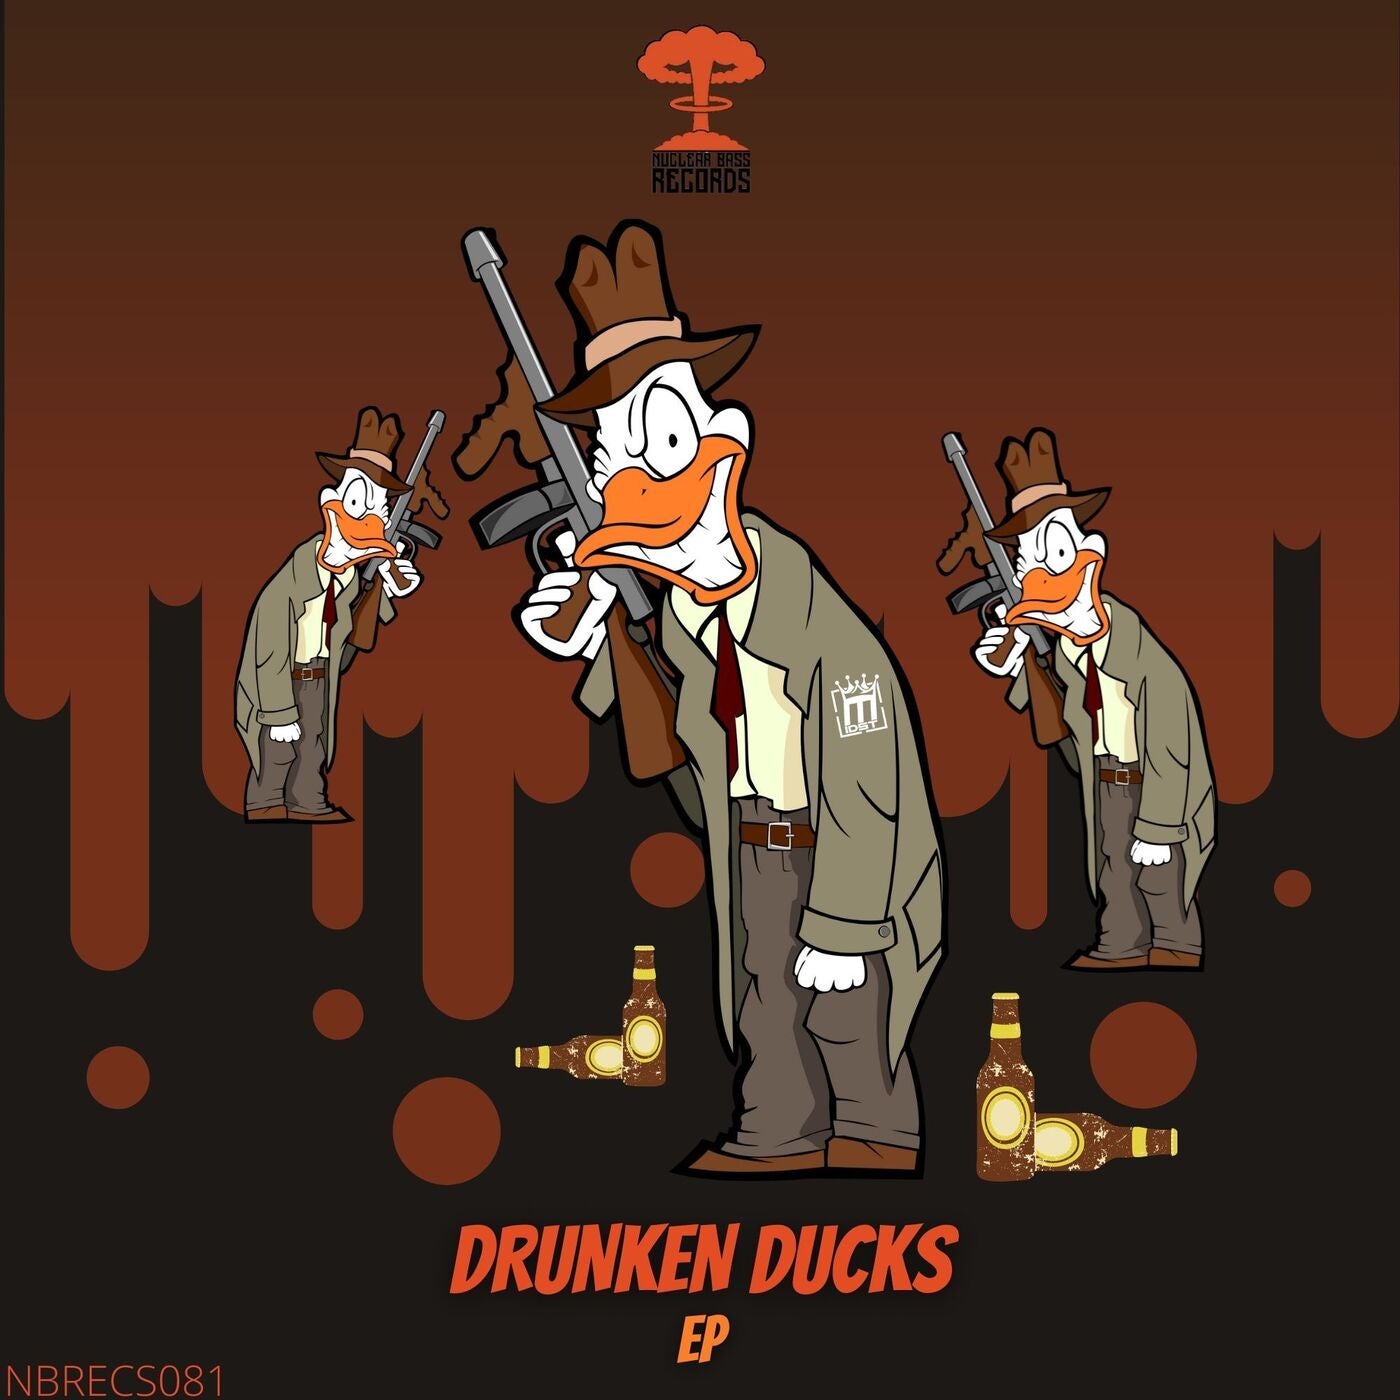 Drunken Ducks